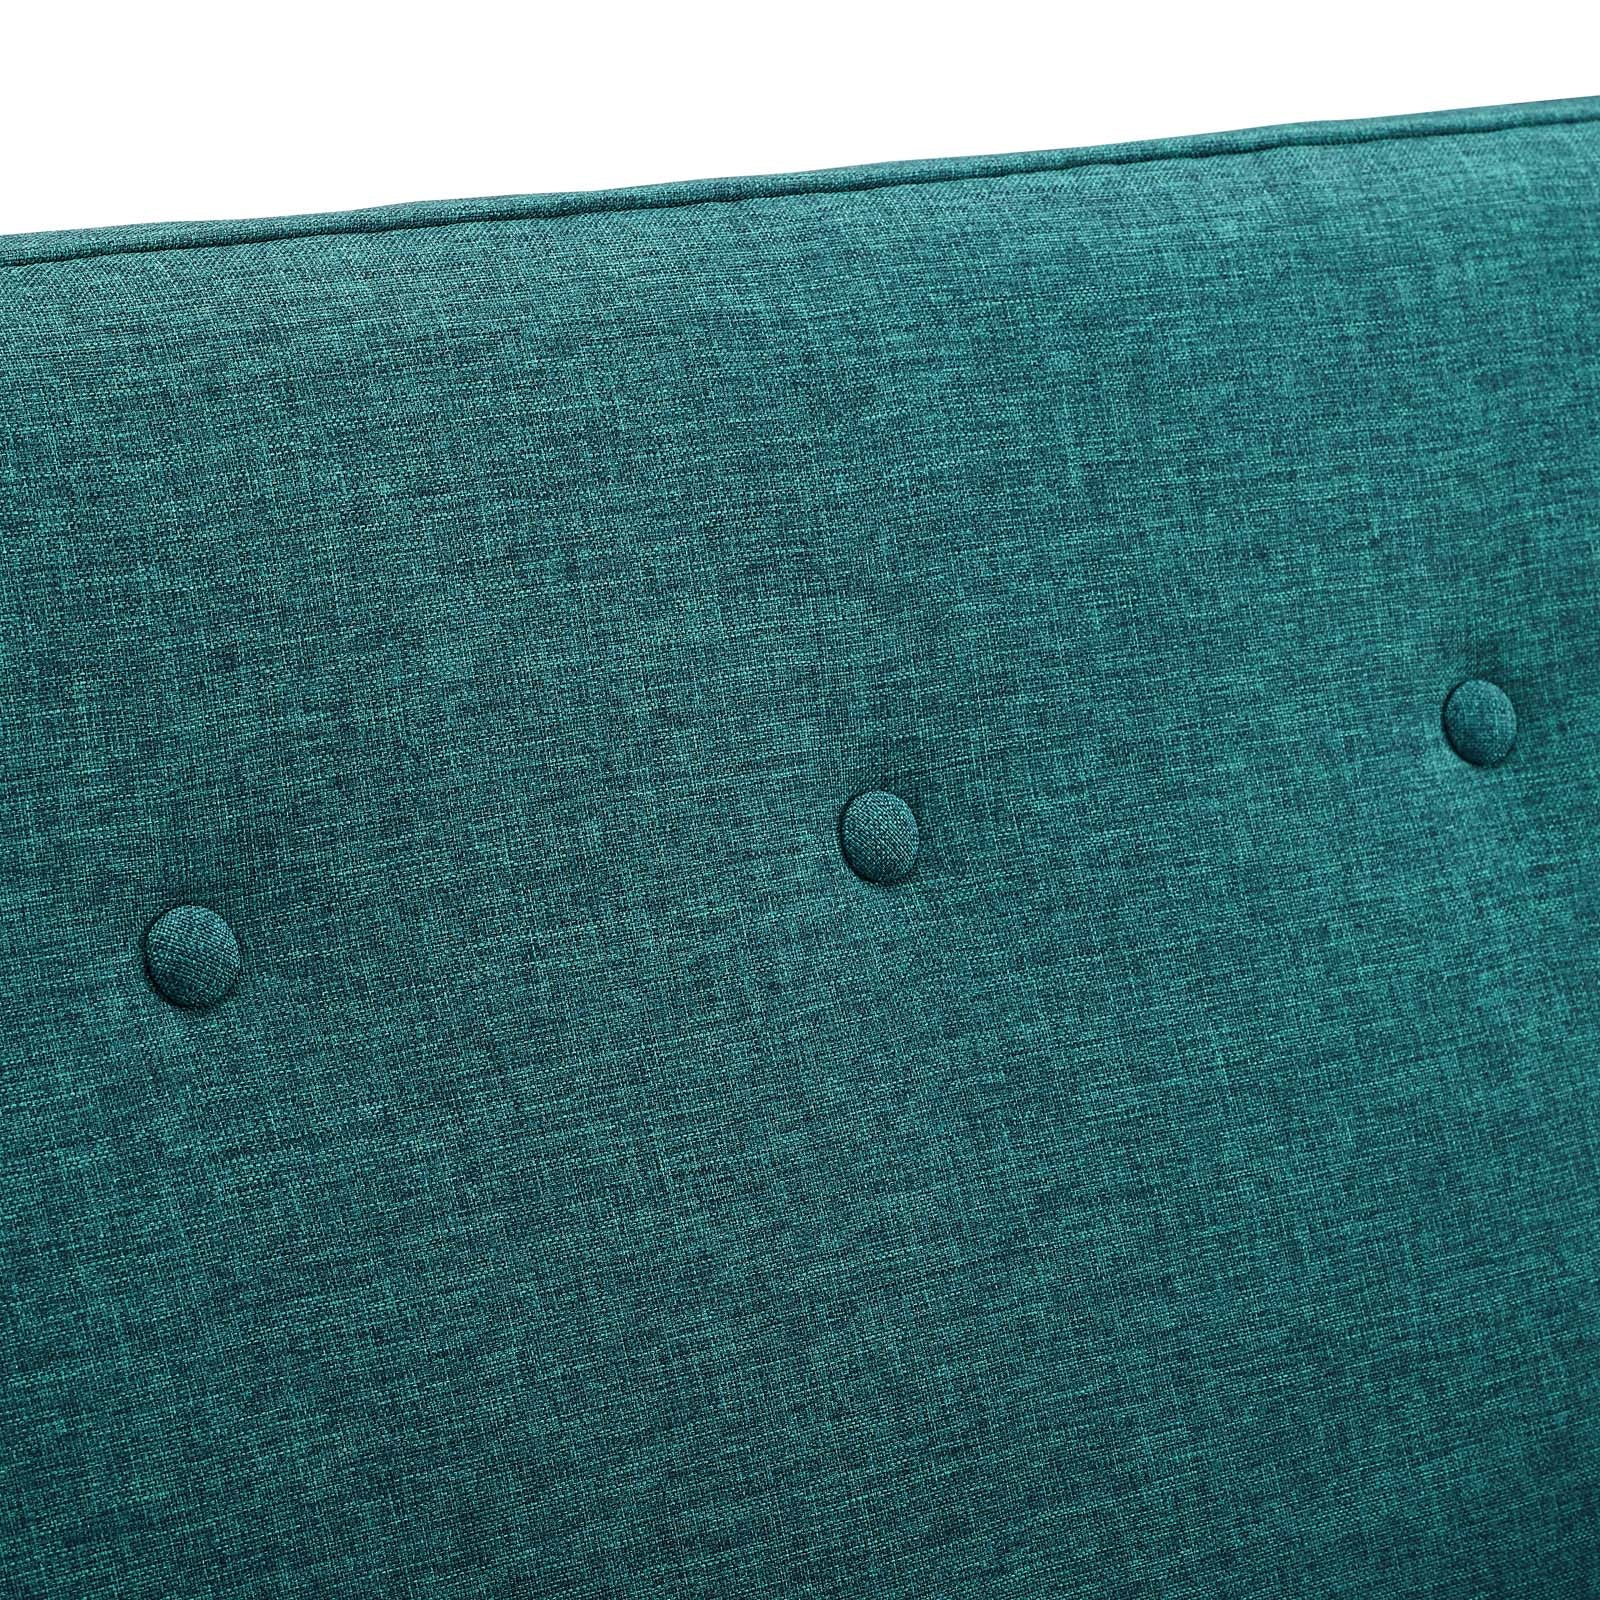 Sheer Upholstered Fabric Loveseat - East Shore Modern Home Furnishings